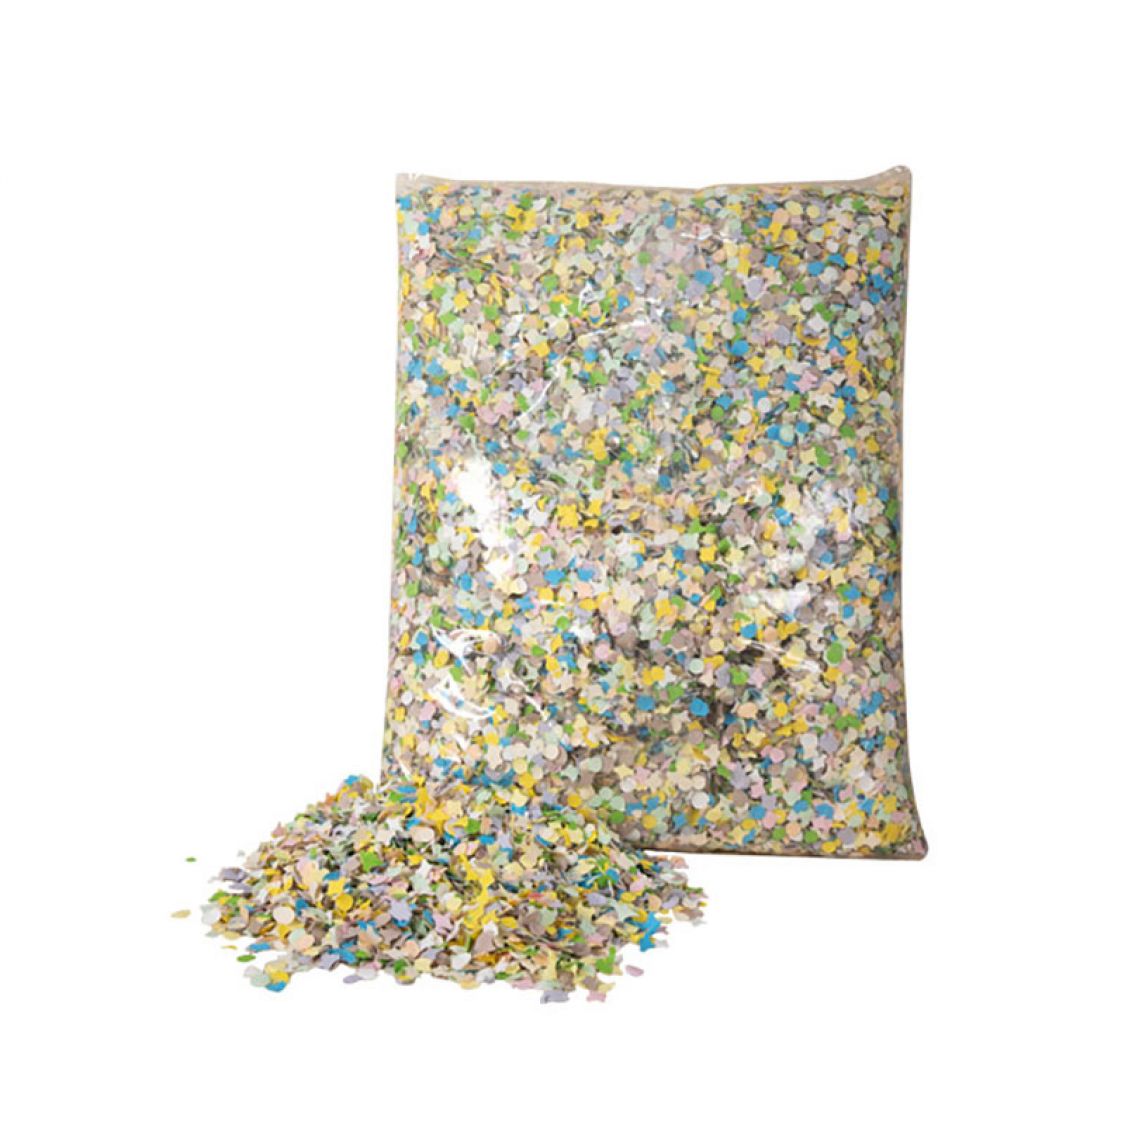 Confettis multicolores dépoussiérés luxe 450gr